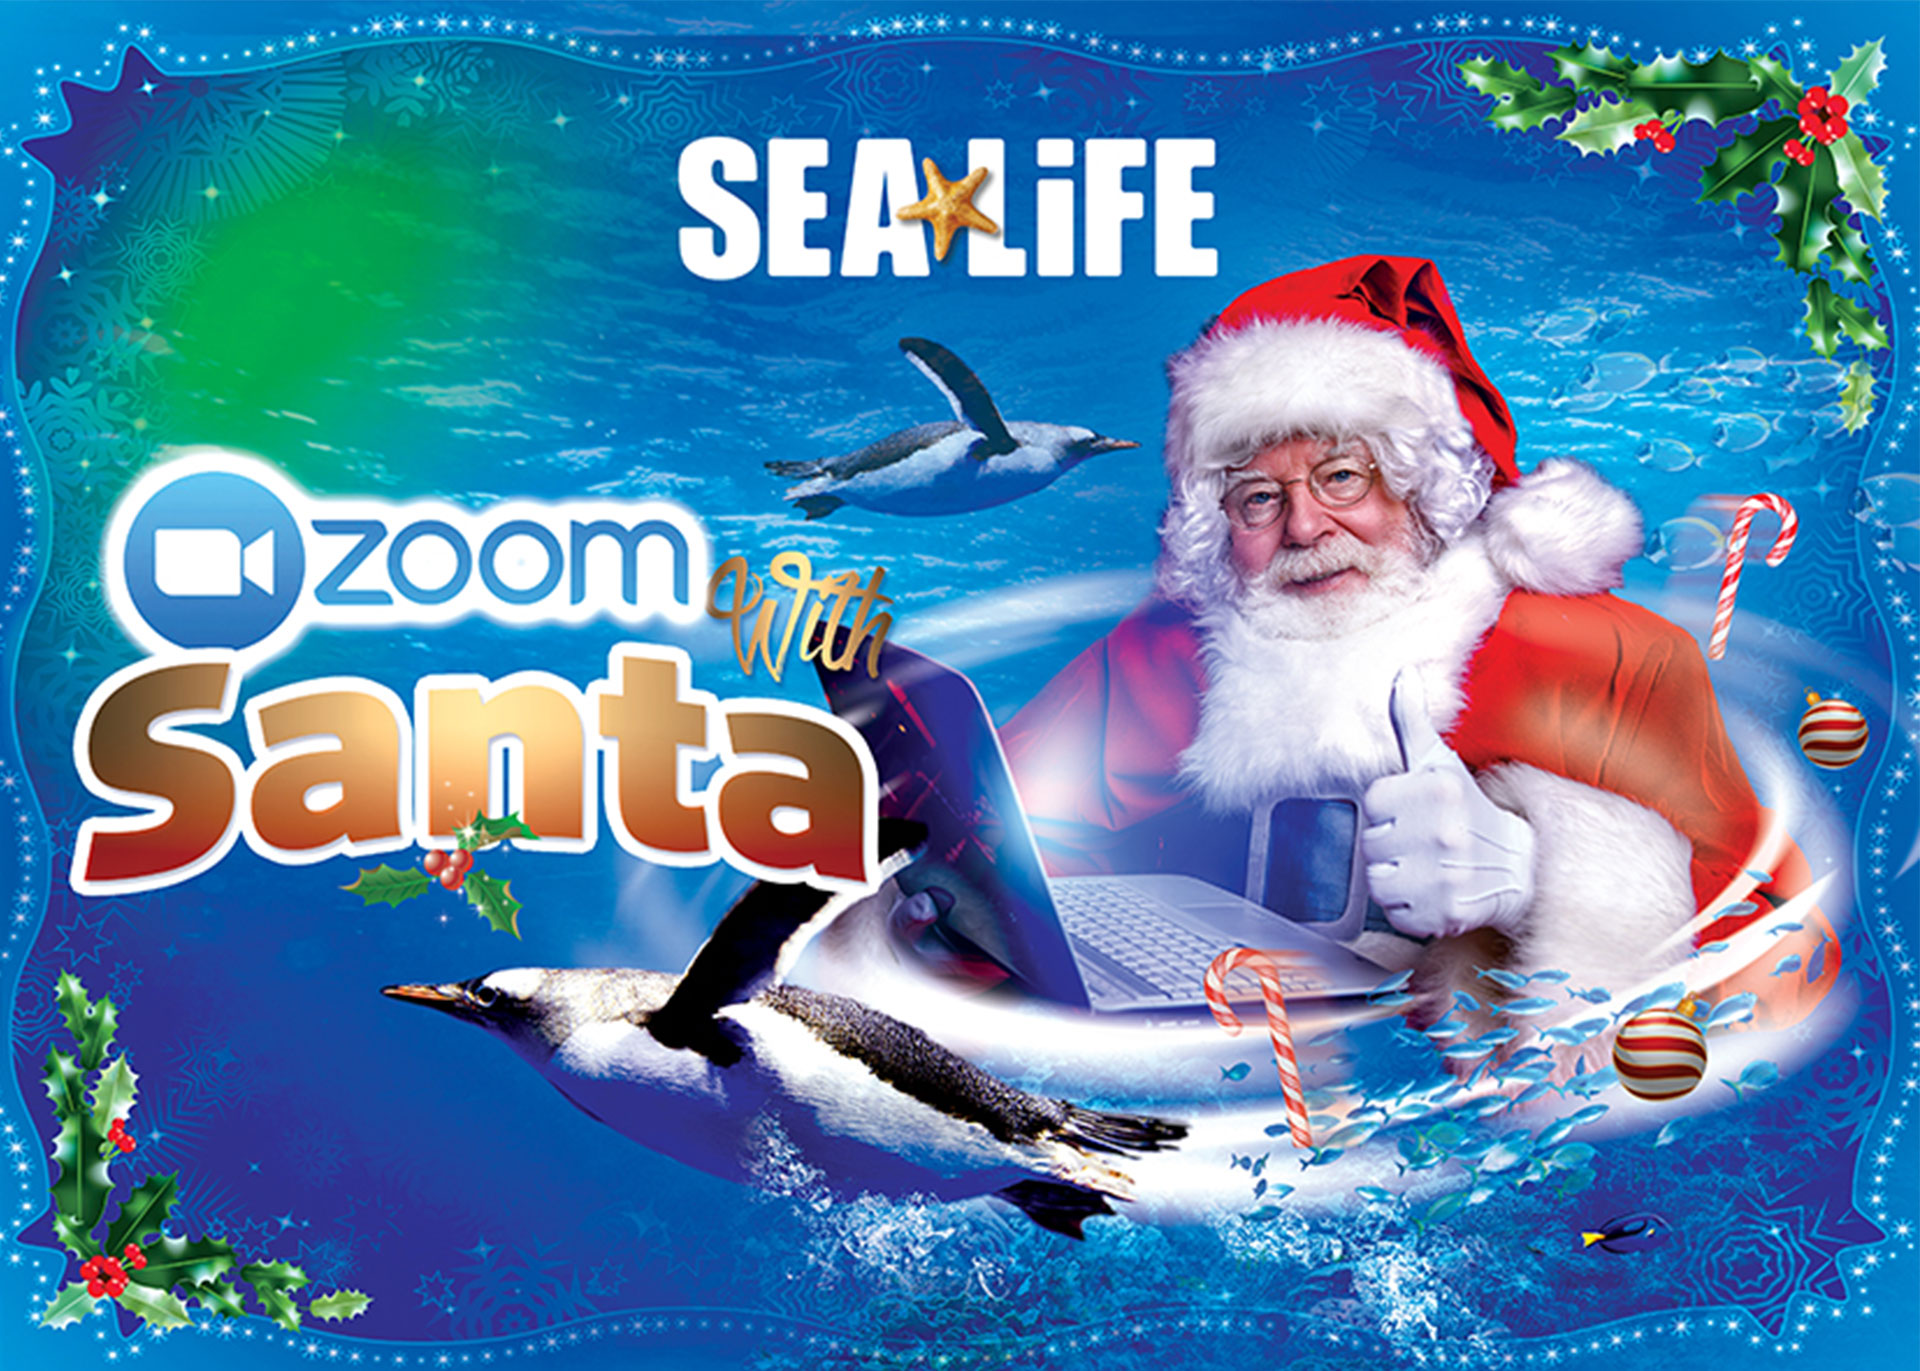 Zoom with Santa at SEA LIFE